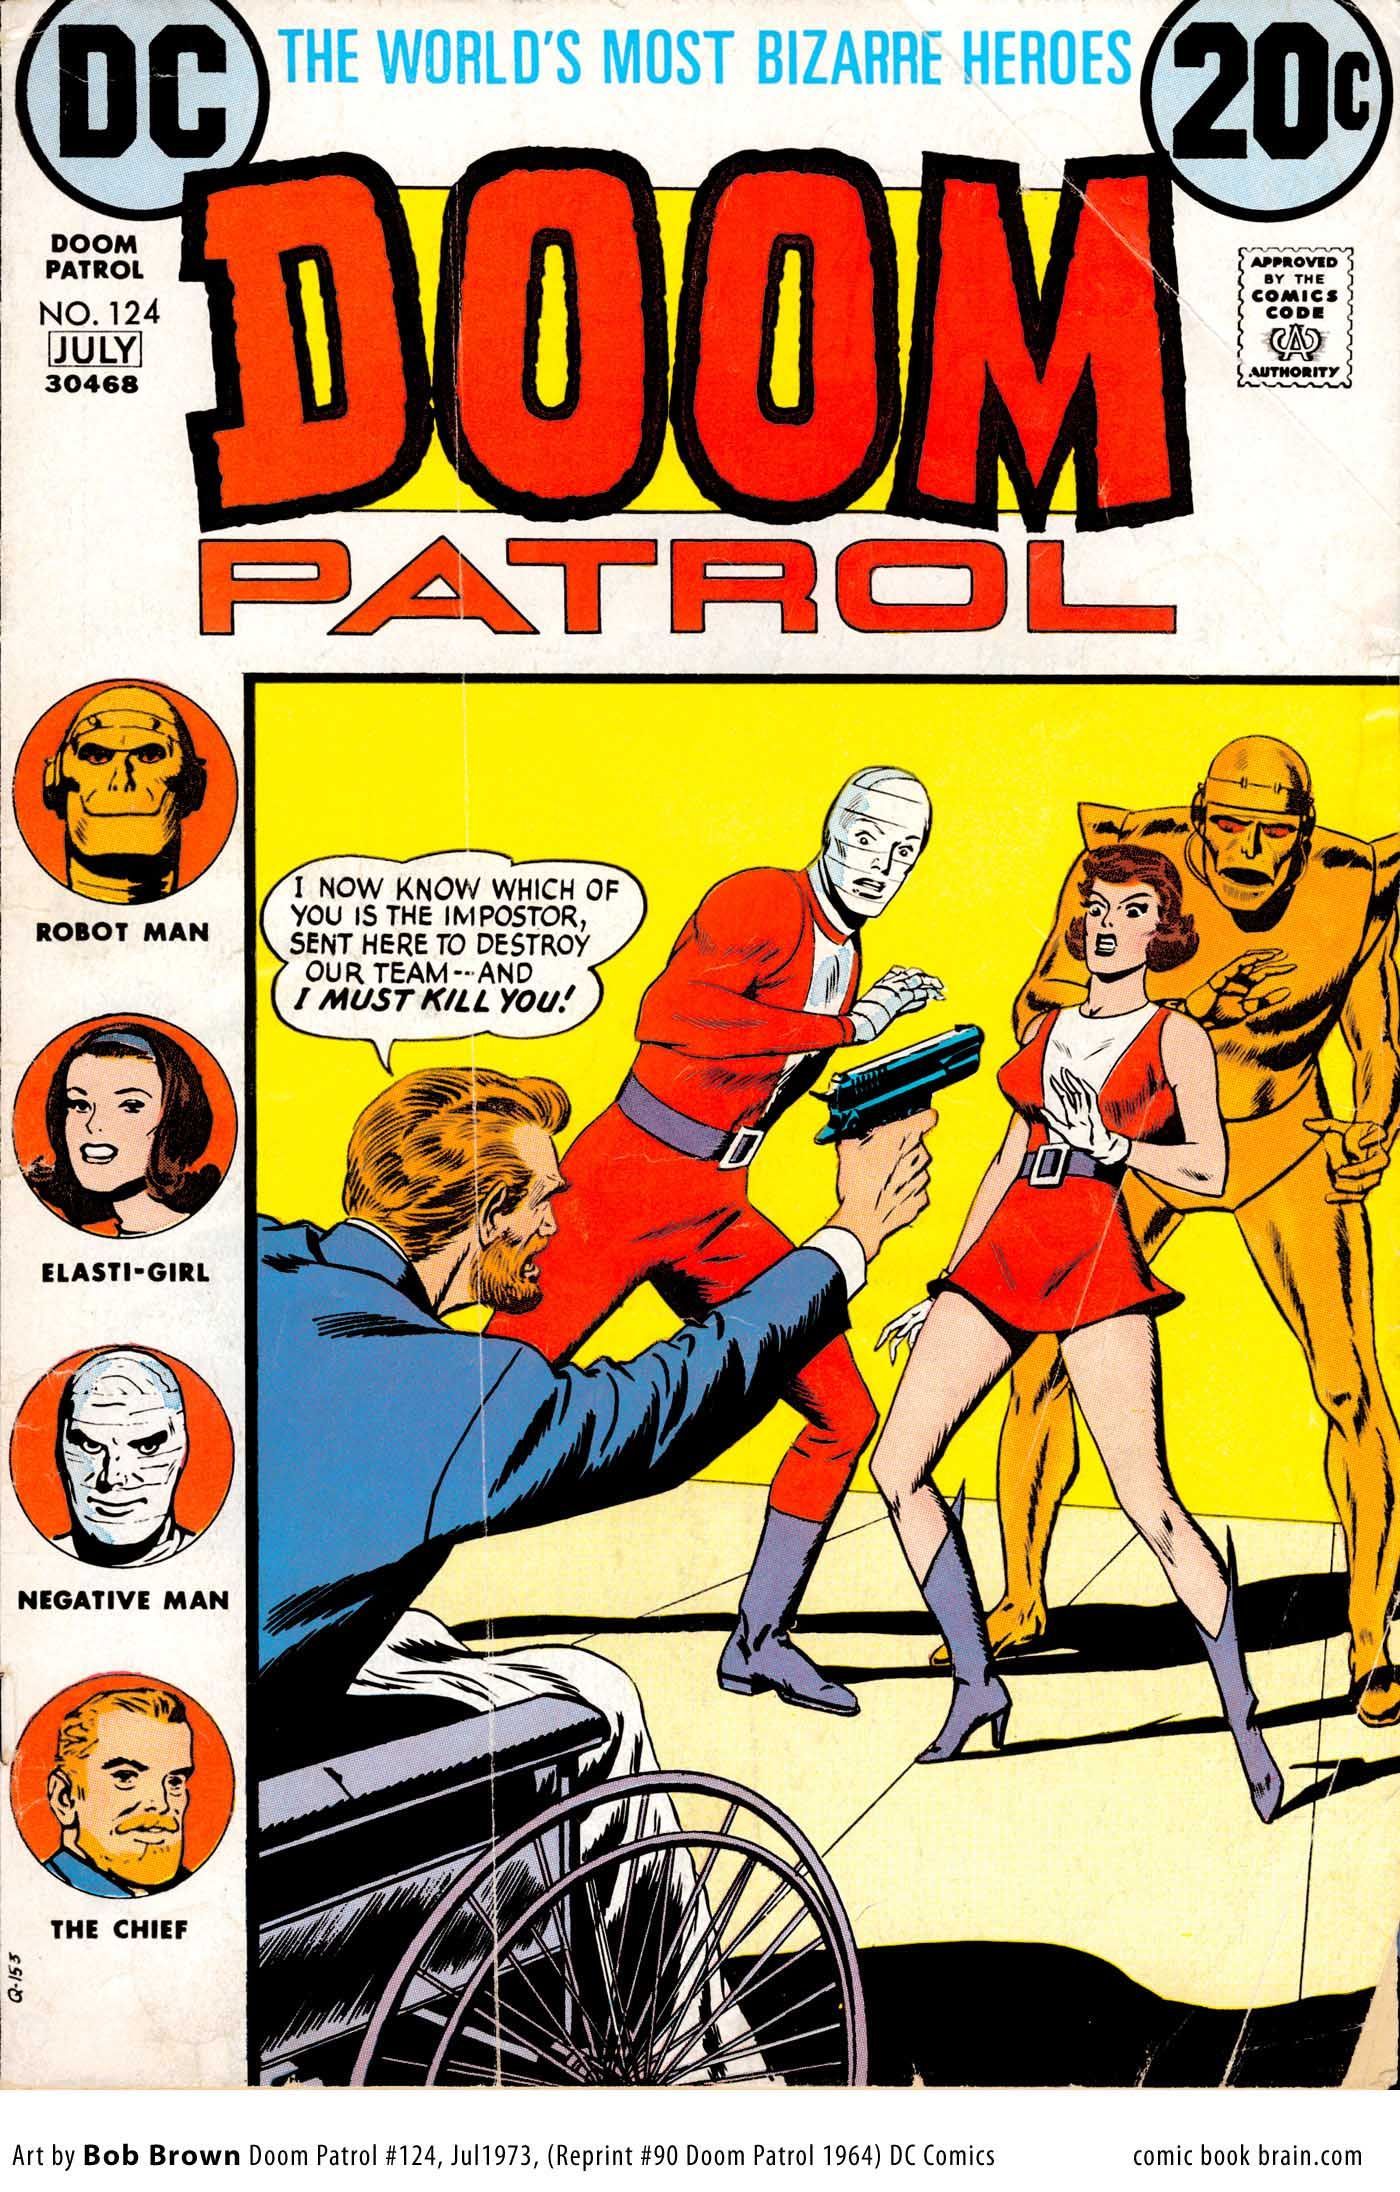 doom patrol patrol, Comic book superheroes